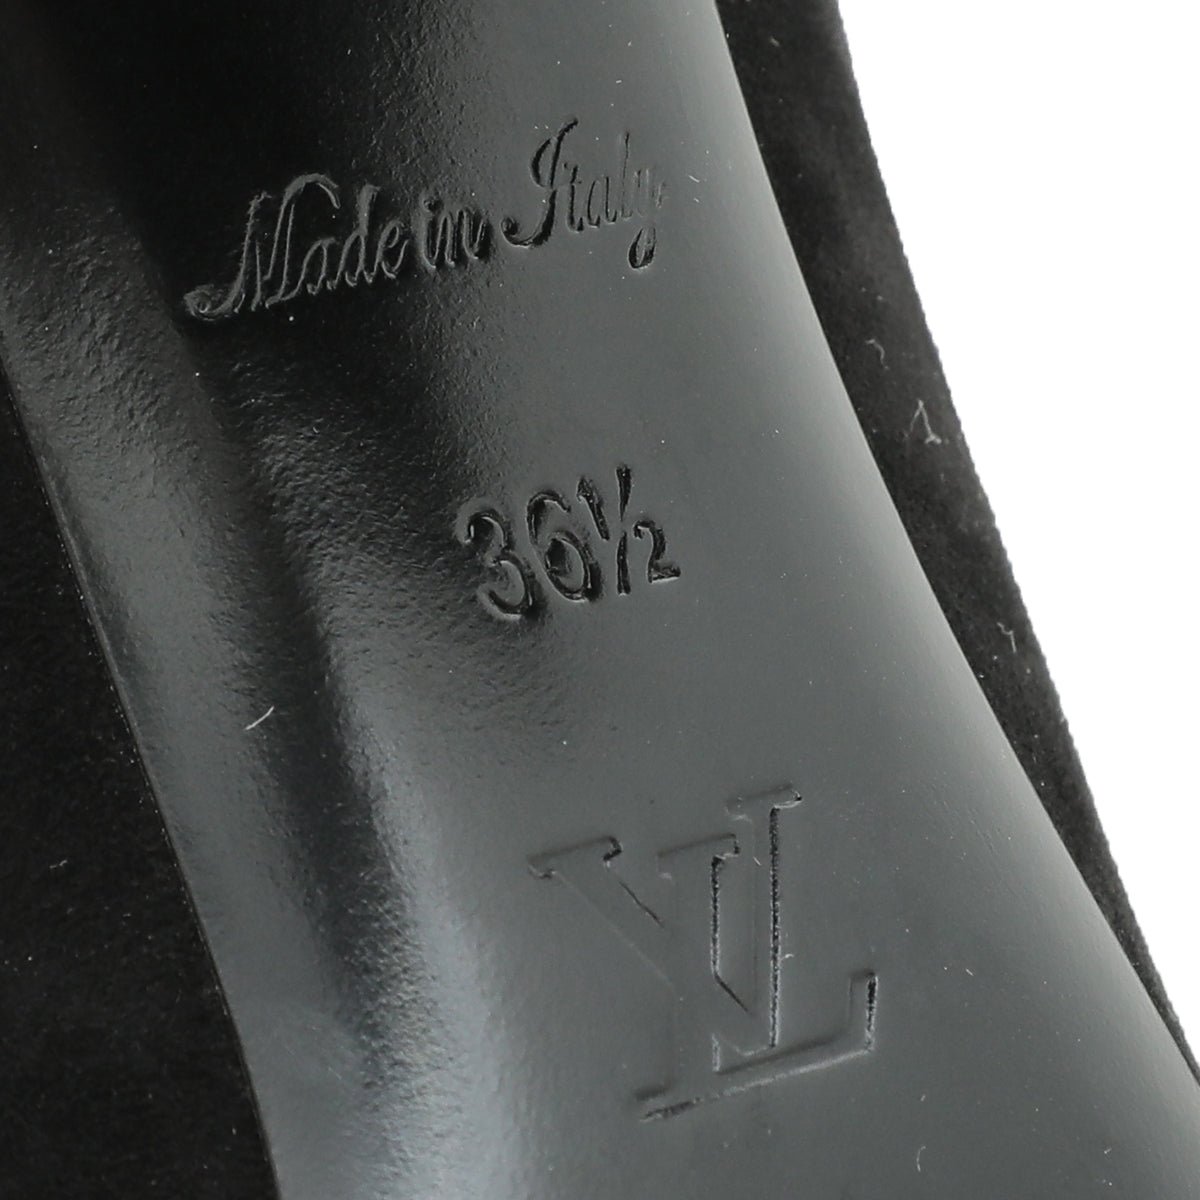 Louis Vuitton Black Suede Madeleine Pump 36.5